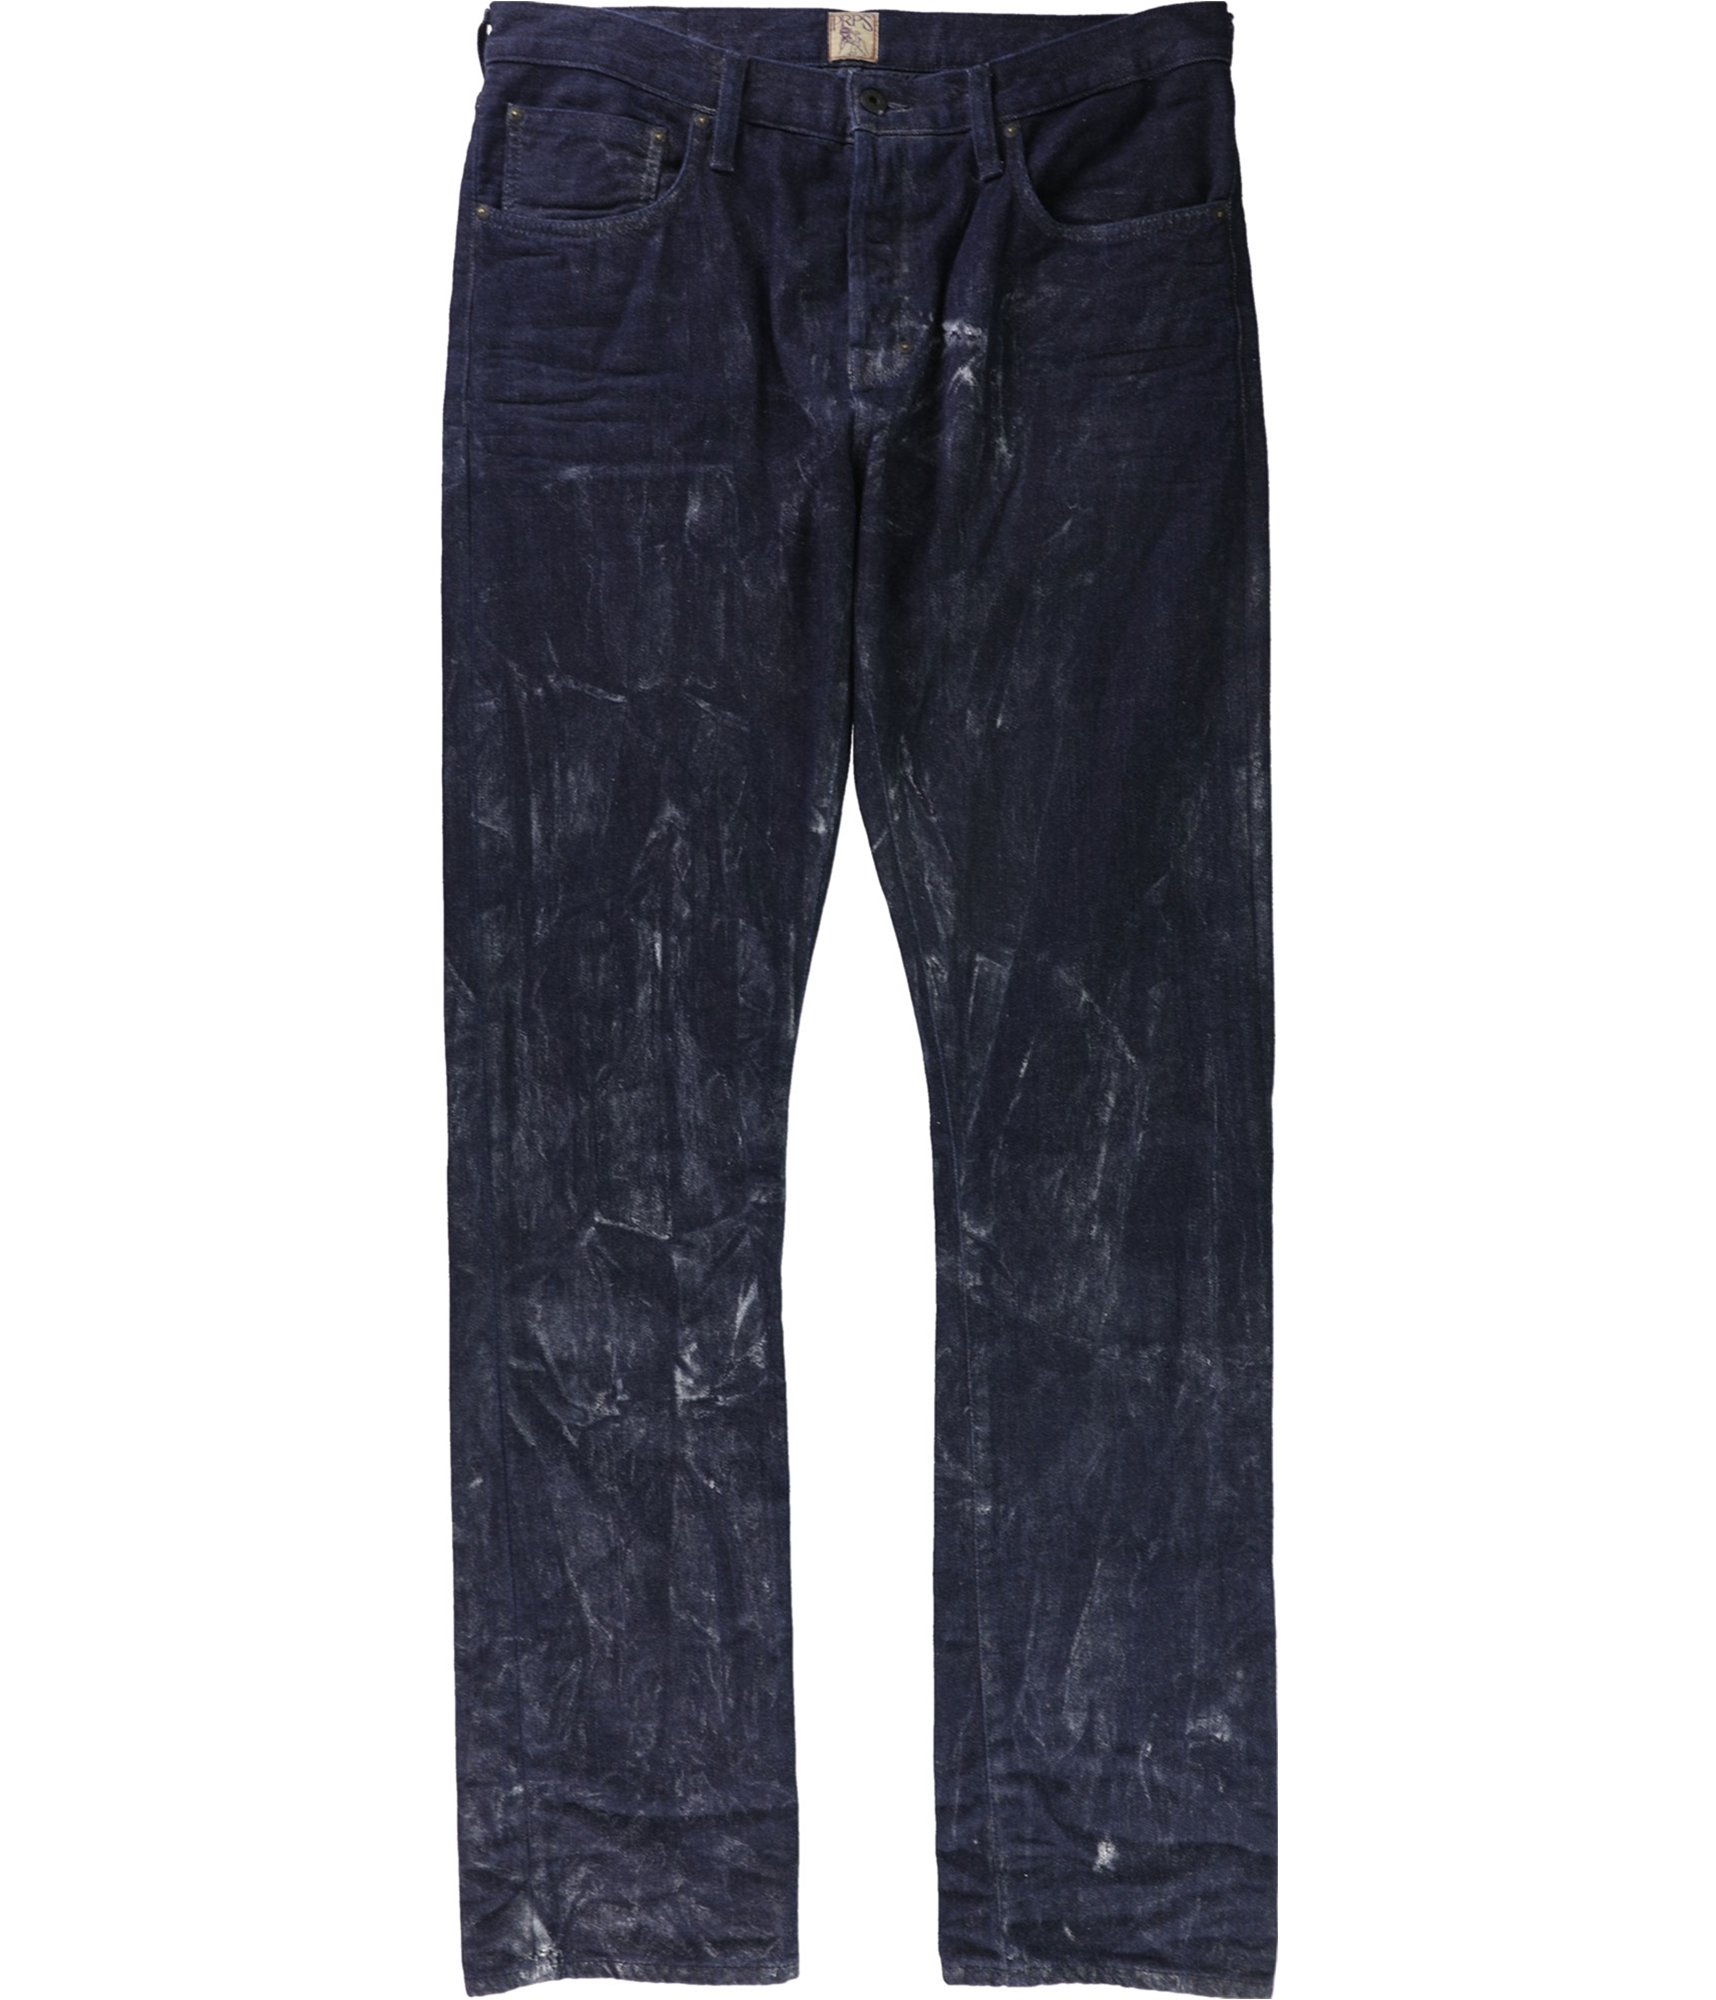 Buy a Mens Prps Goods & Co. Demon Polaris Slim Fit Jeans Online ...